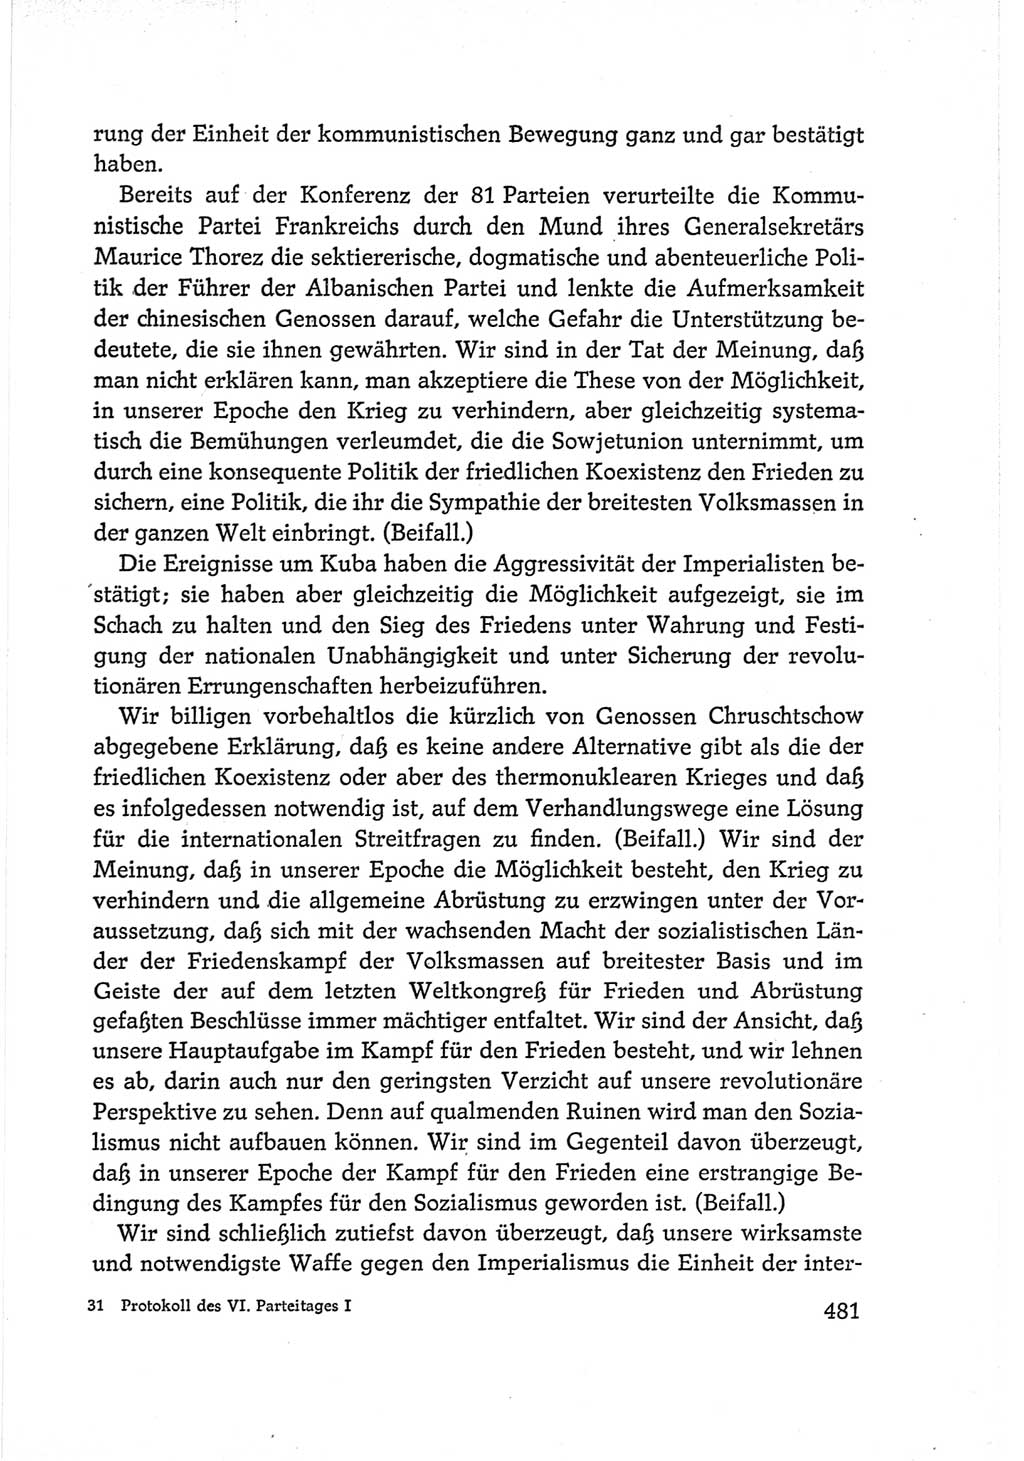 Protokoll der Verhandlungen des Ⅵ. Parteitages der Sozialistischen Einheitspartei Deutschlands (SED) [Deutsche Demokratische Republik (DDR)] 1963, Band Ⅰ, Seite 481 (Prot. Verh. Ⅵ. PT SED DDR 1963, Bd. Ⅰ, S. 481)